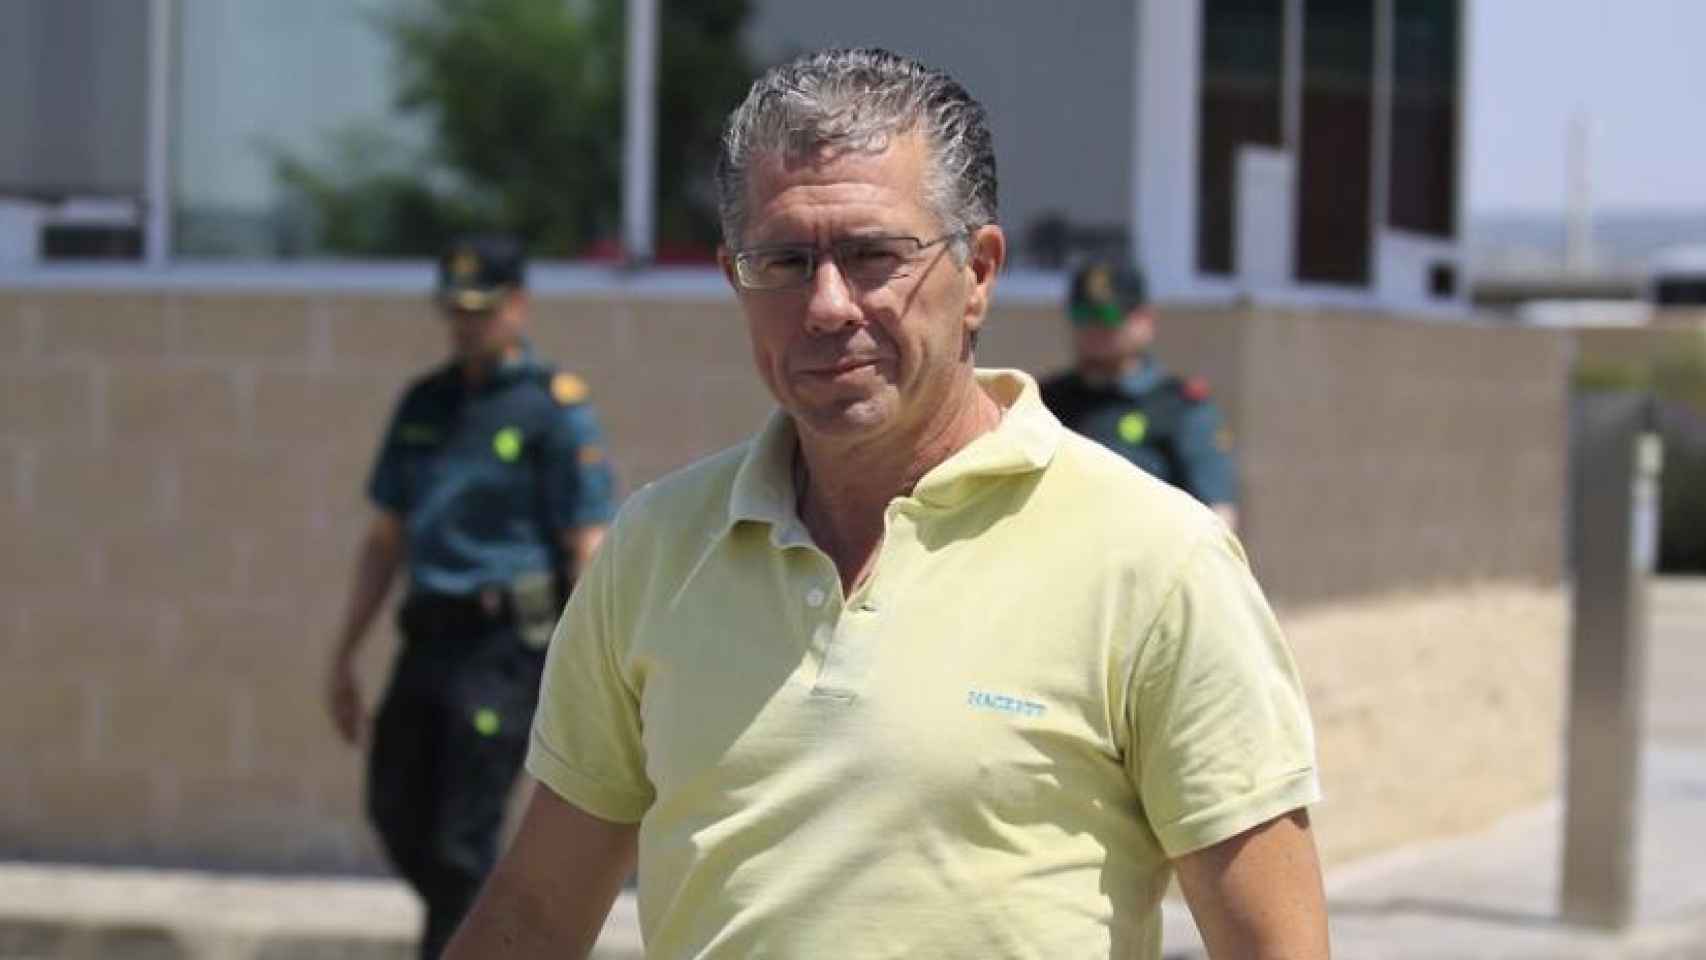 Francisco Granados, a su salida de la cárcel el 14 de junio de 2017 tras depositar una fianza./